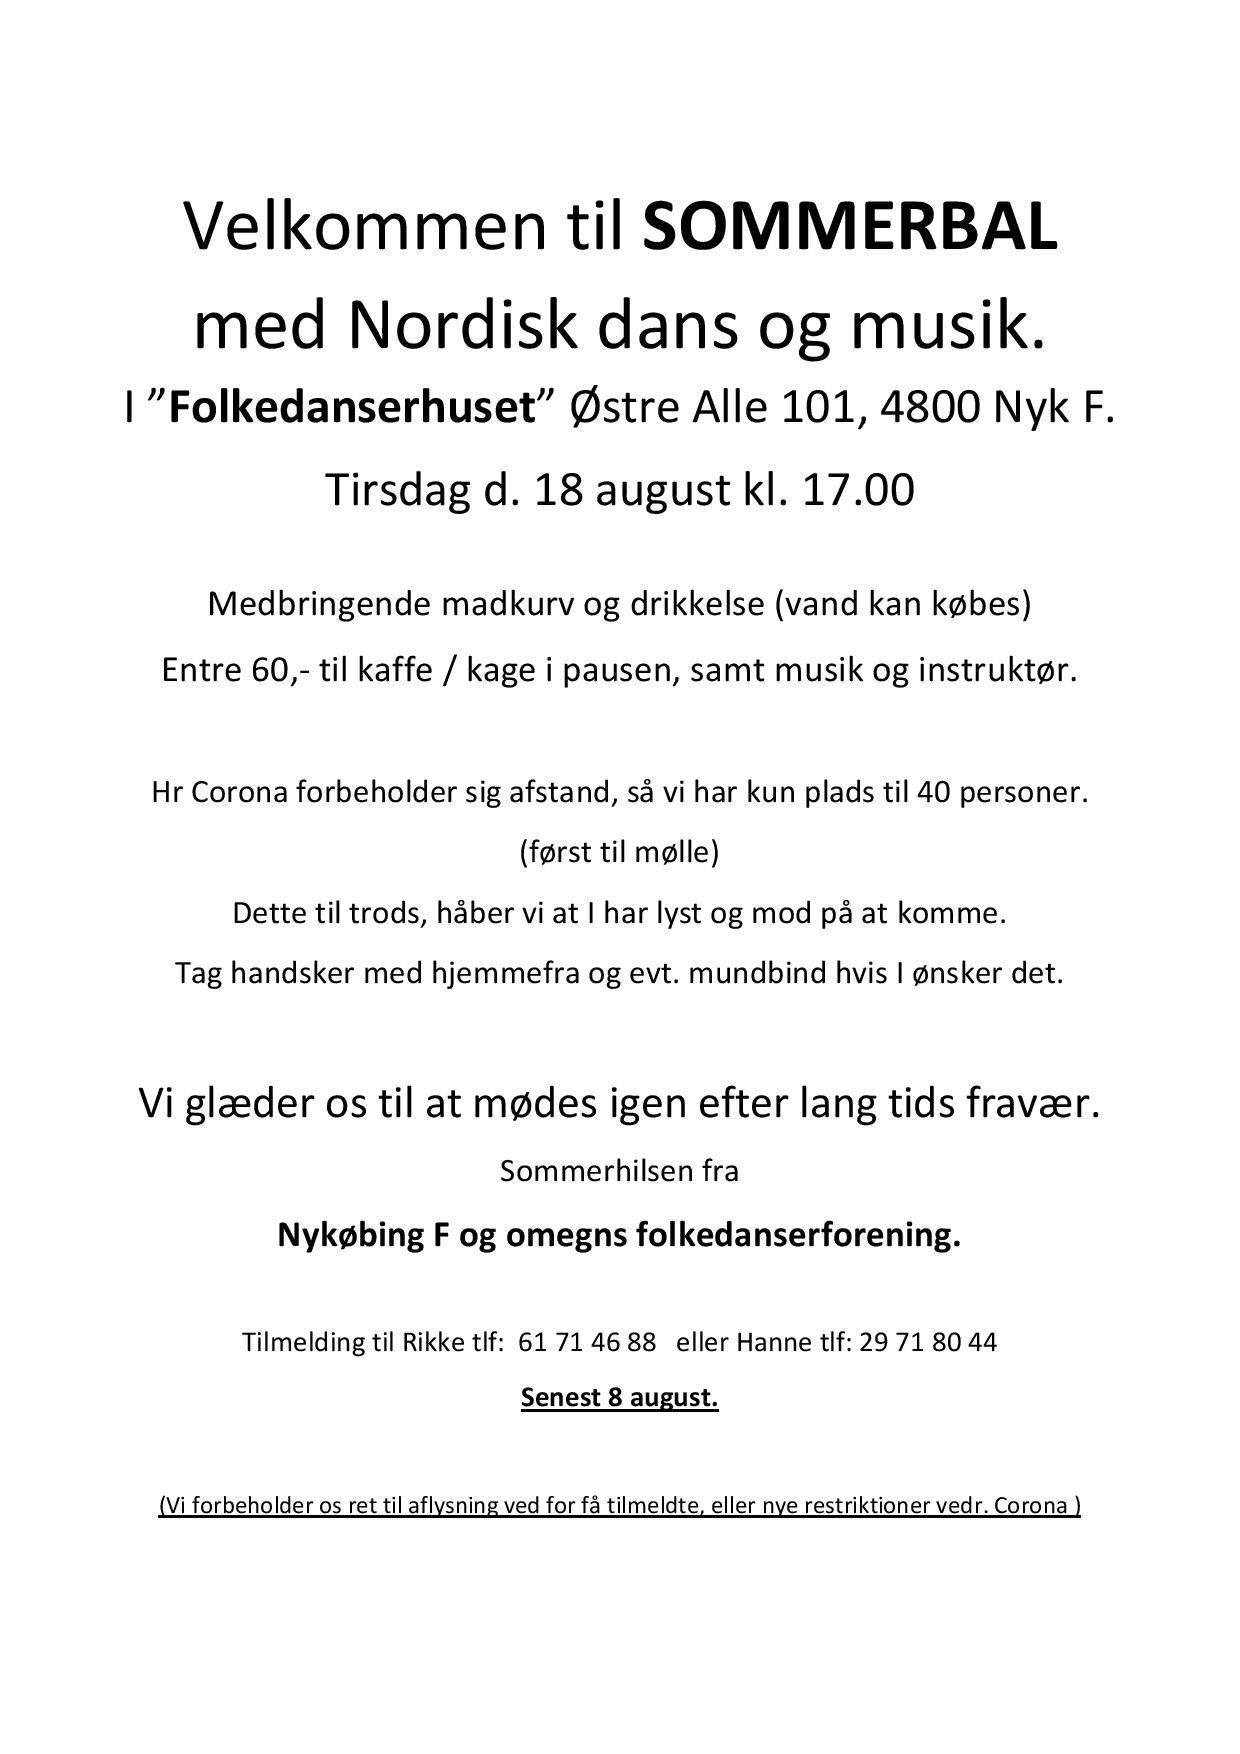 Velkommen til SOMMERBAL med Nordisk dans og musik-page-001